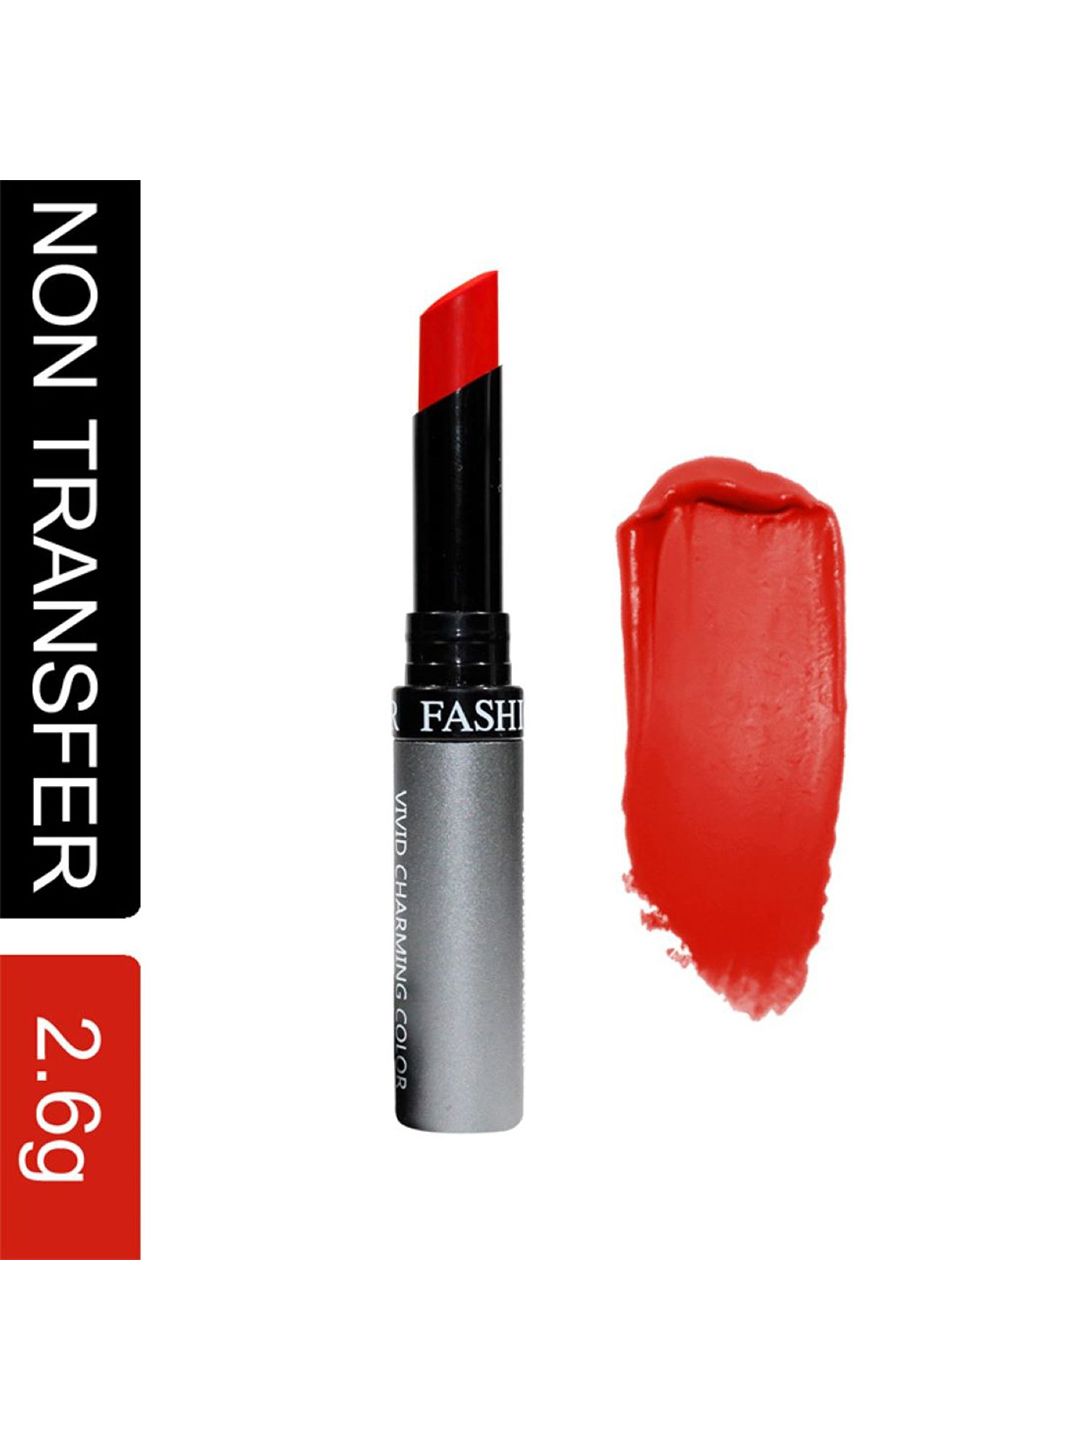 Fashion Colour Kiss Lip No Transfer Lipstick - Purplish Red 80 Price in India